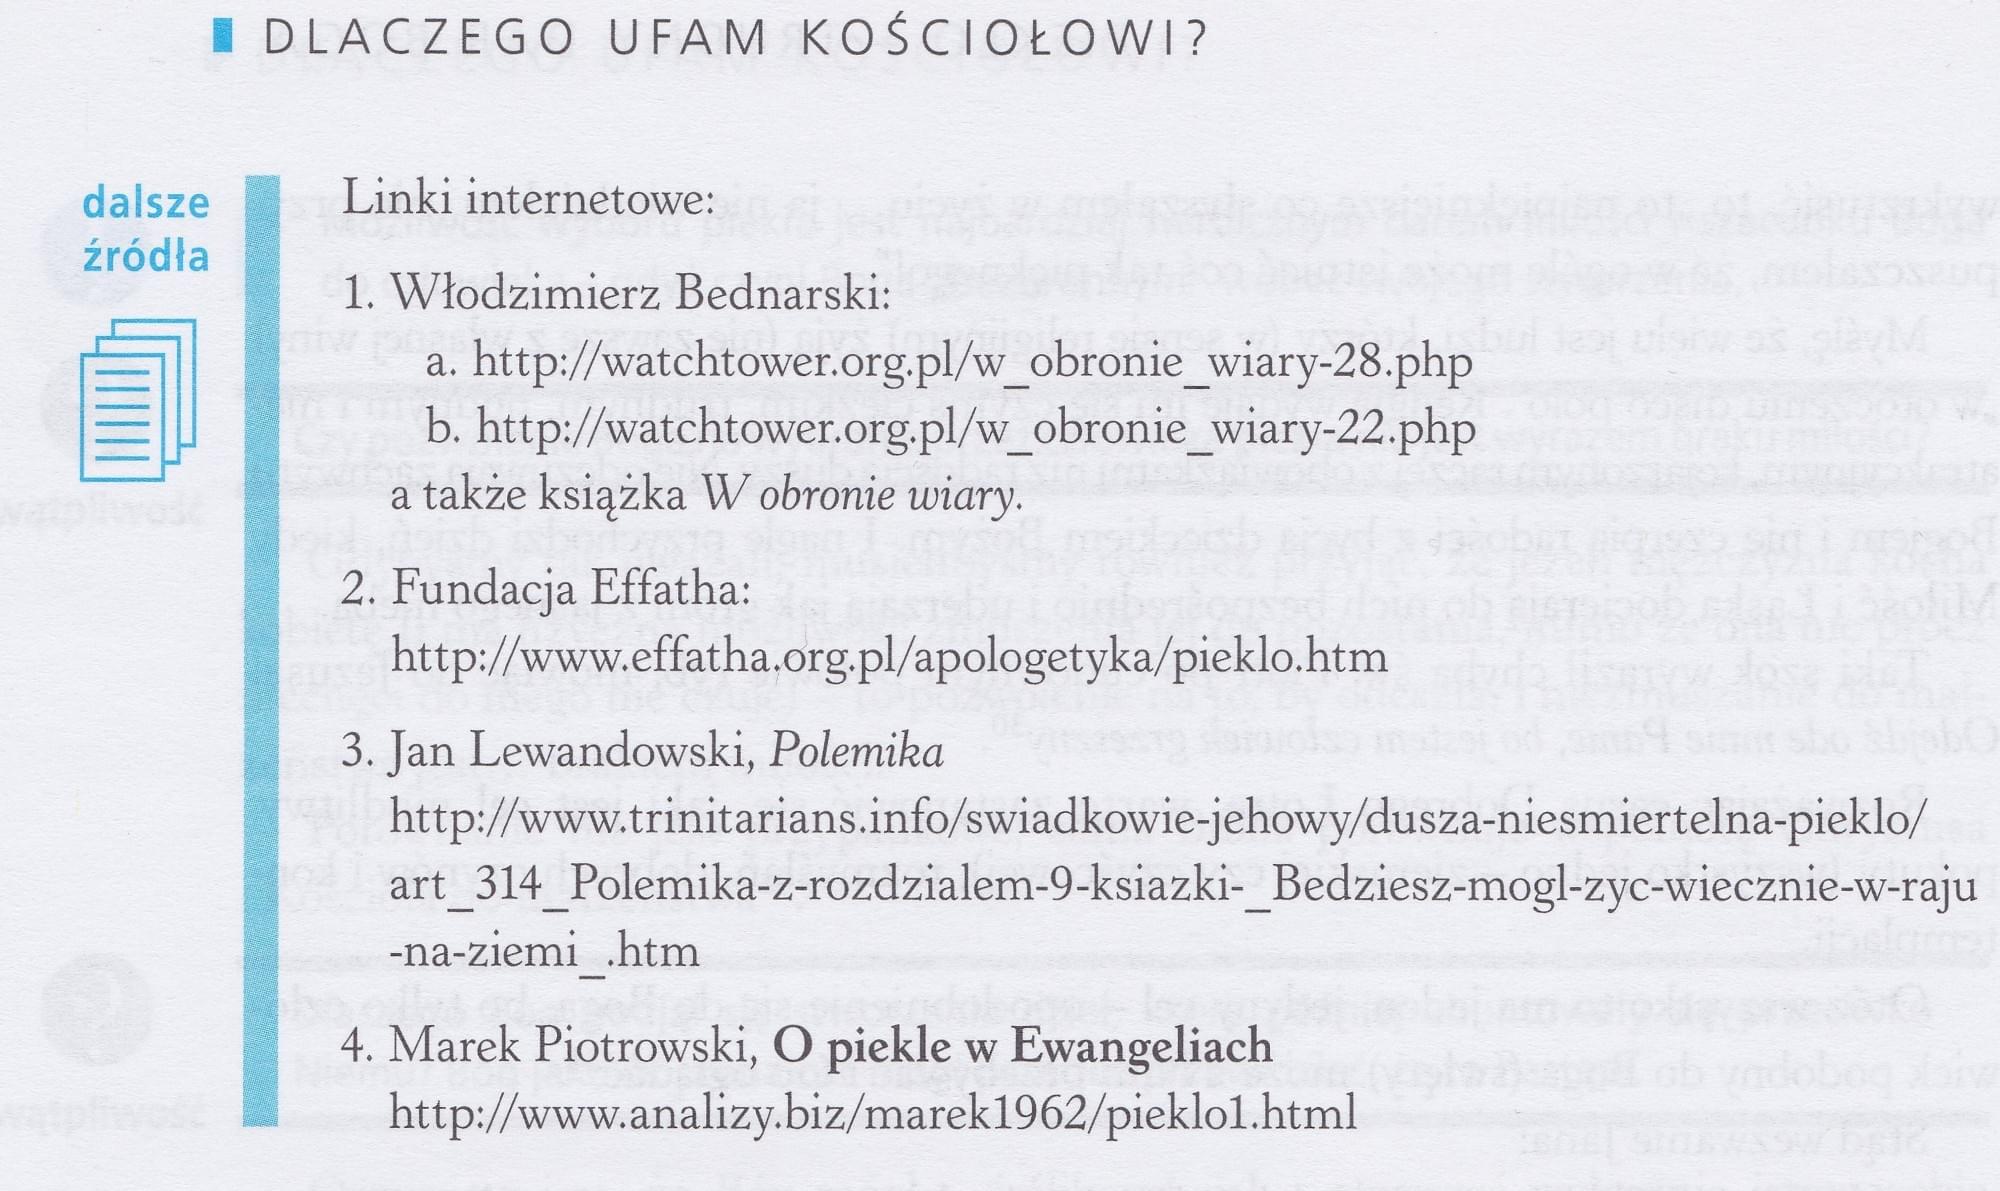 Piekło - trudny dar Boga - Marek Piotrowski